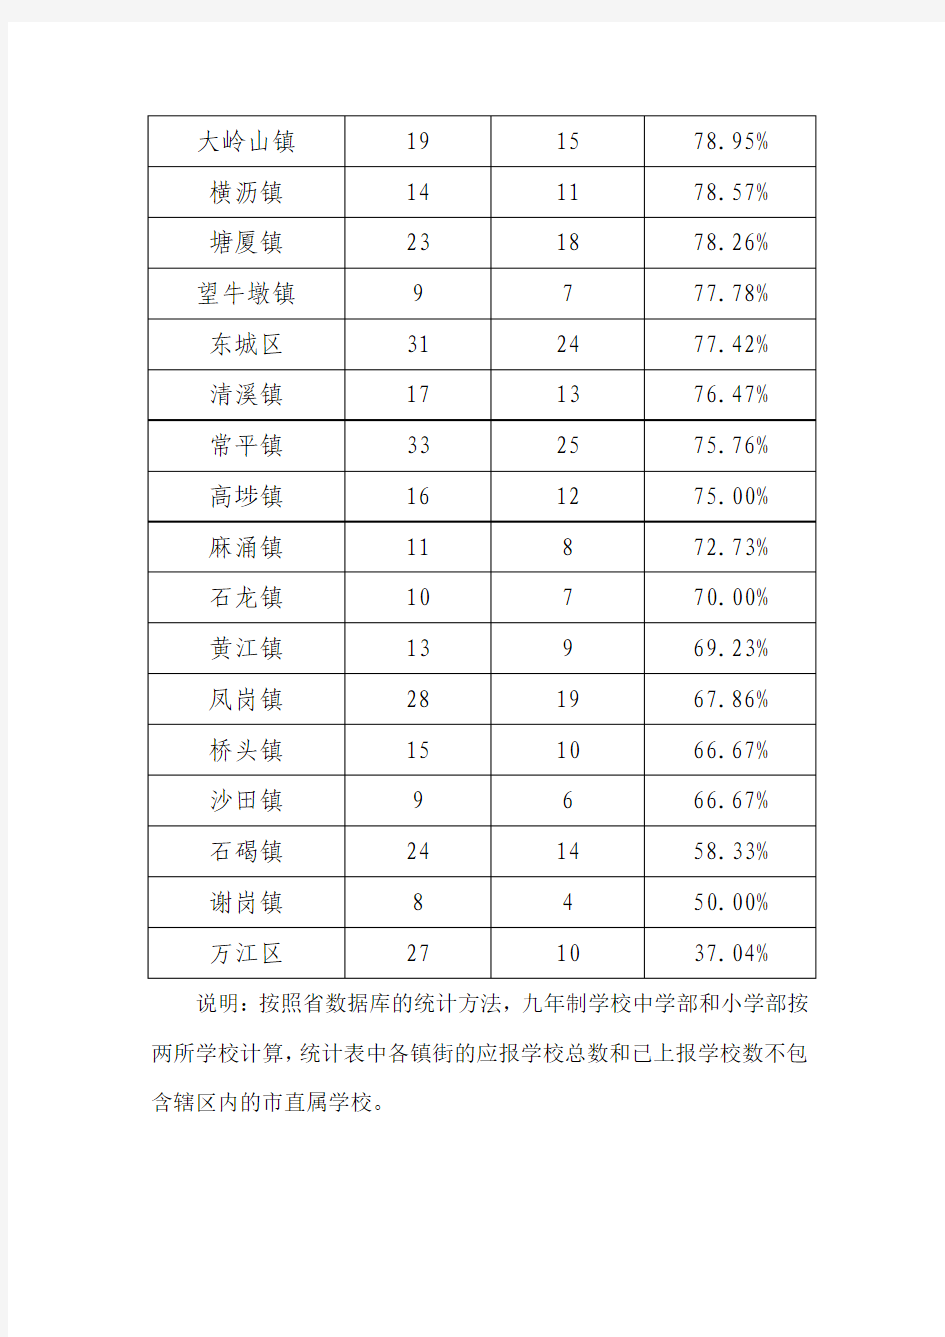 2011年东莞市《广东省中小学生体能素质评价标准》数据上报情况统计表